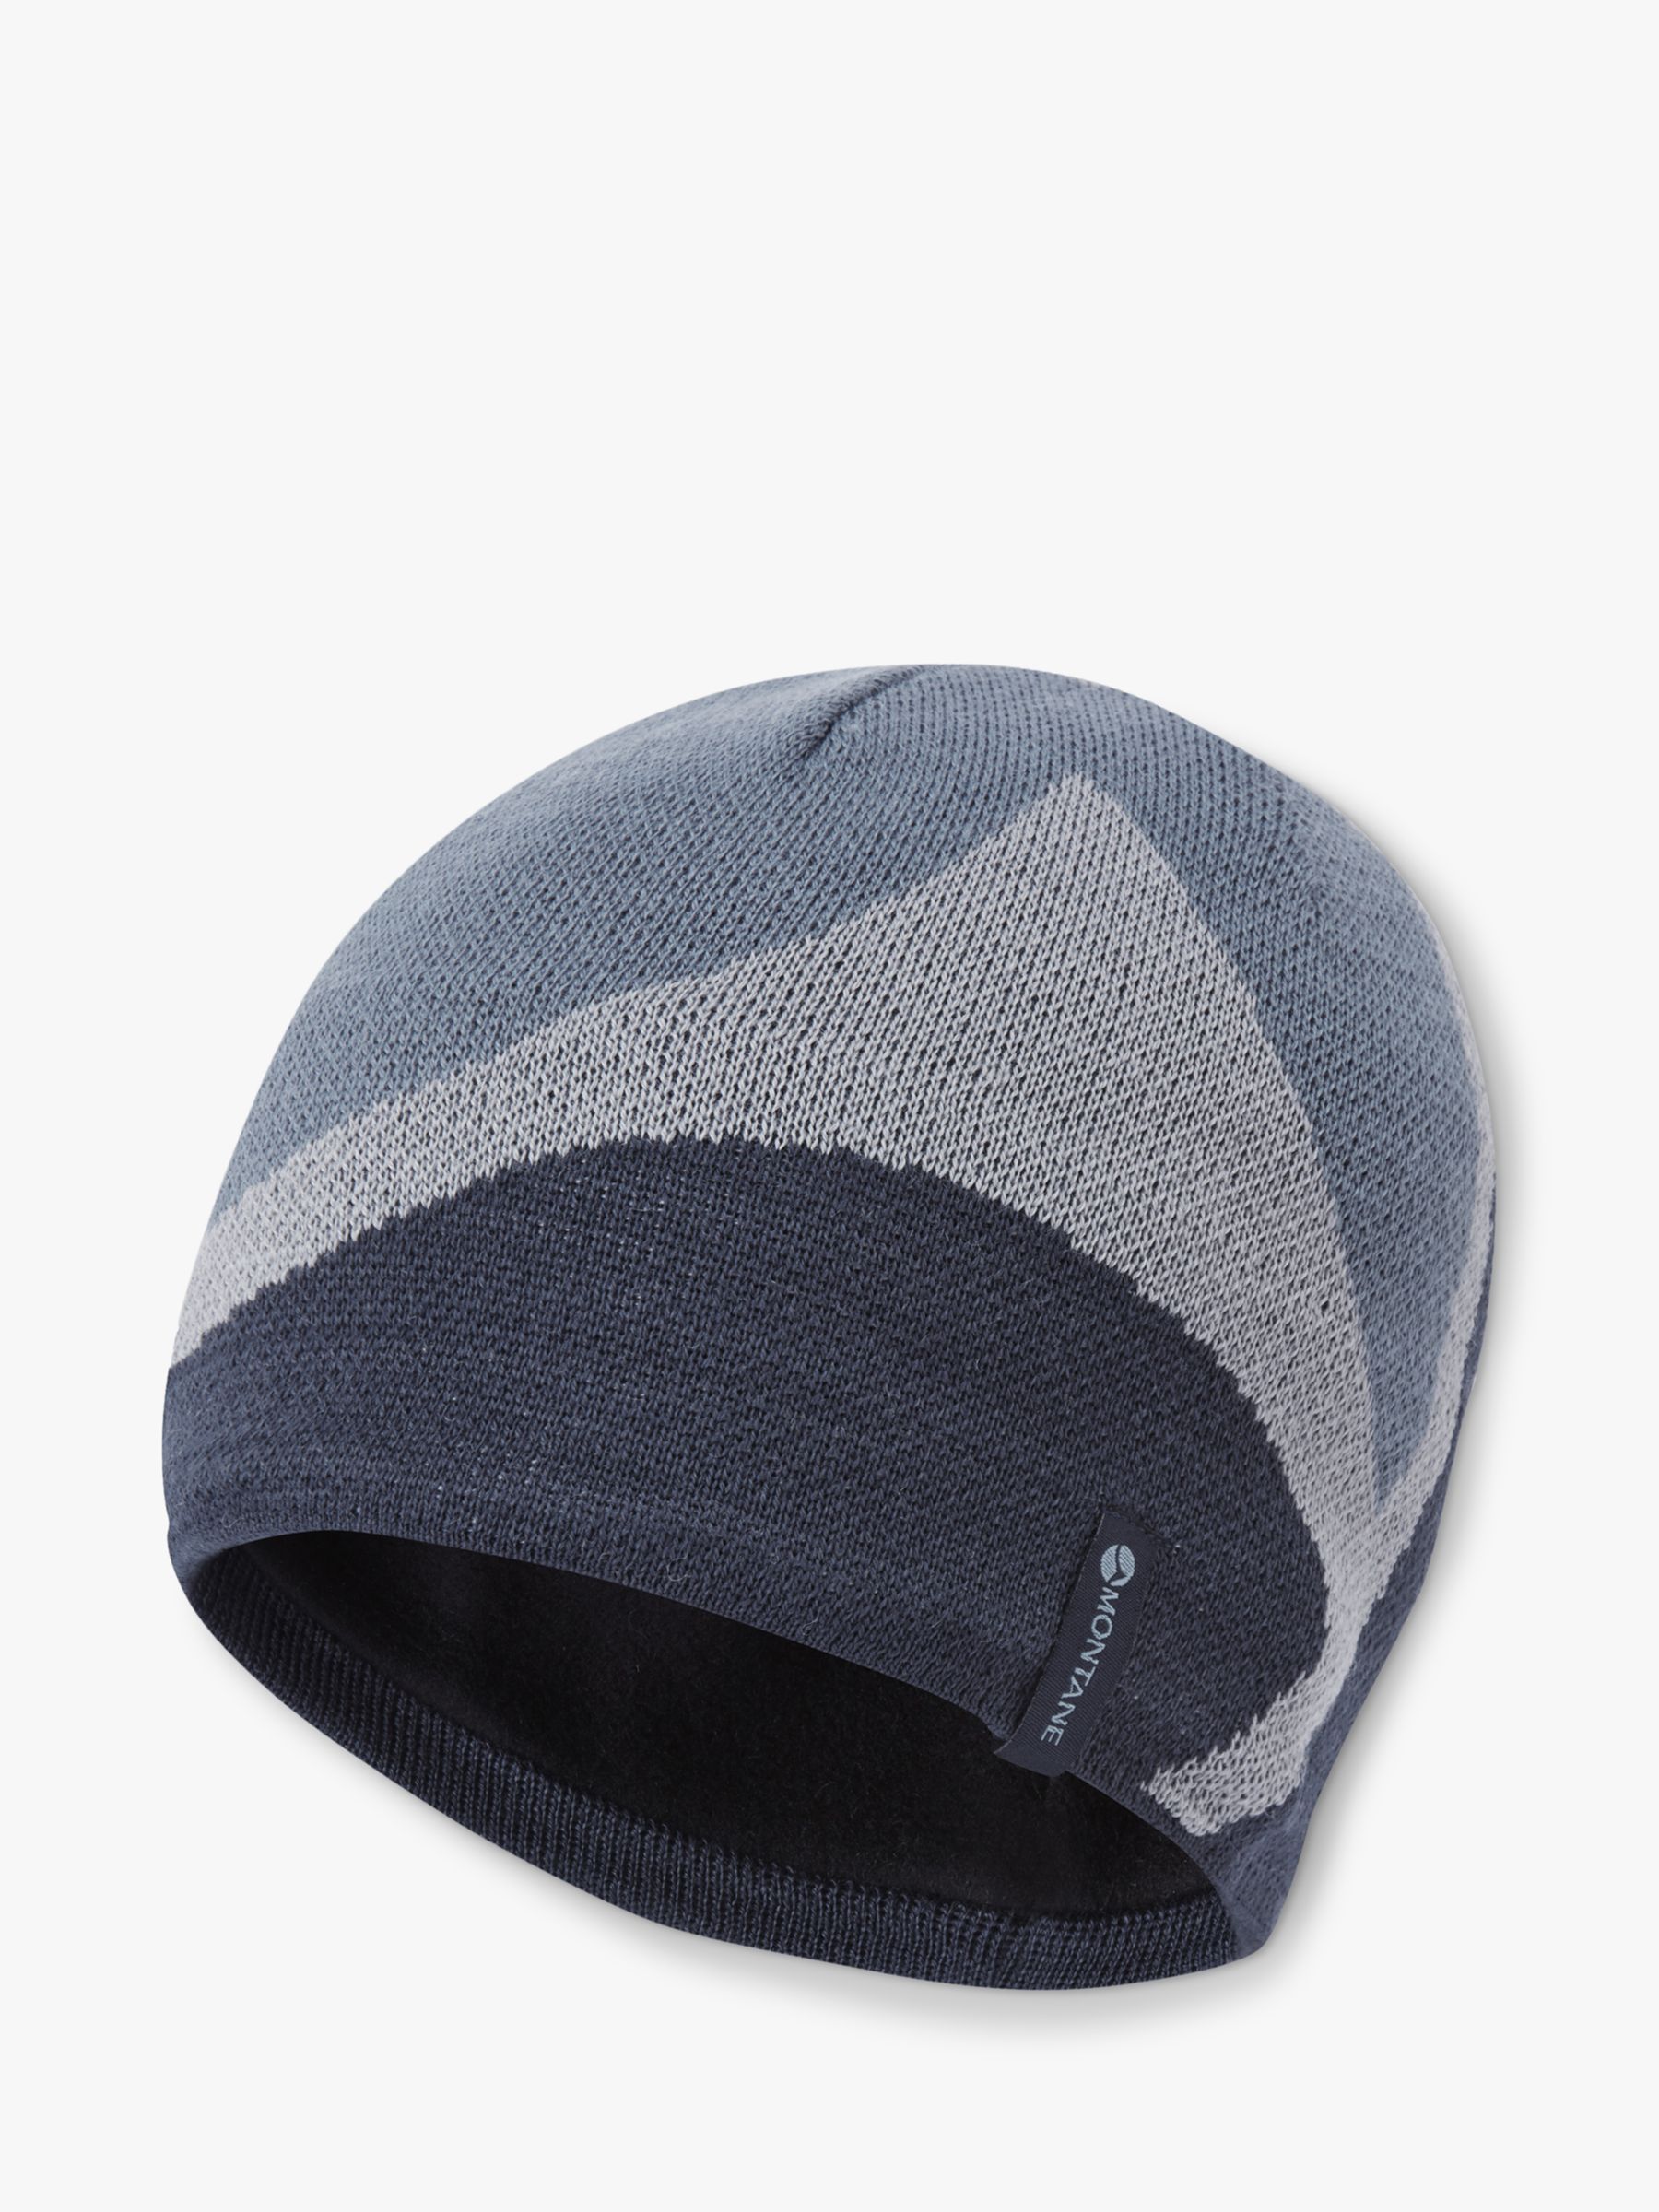 Шерстяная шапка-бини с логотипом Montane, затмение синий шапка m